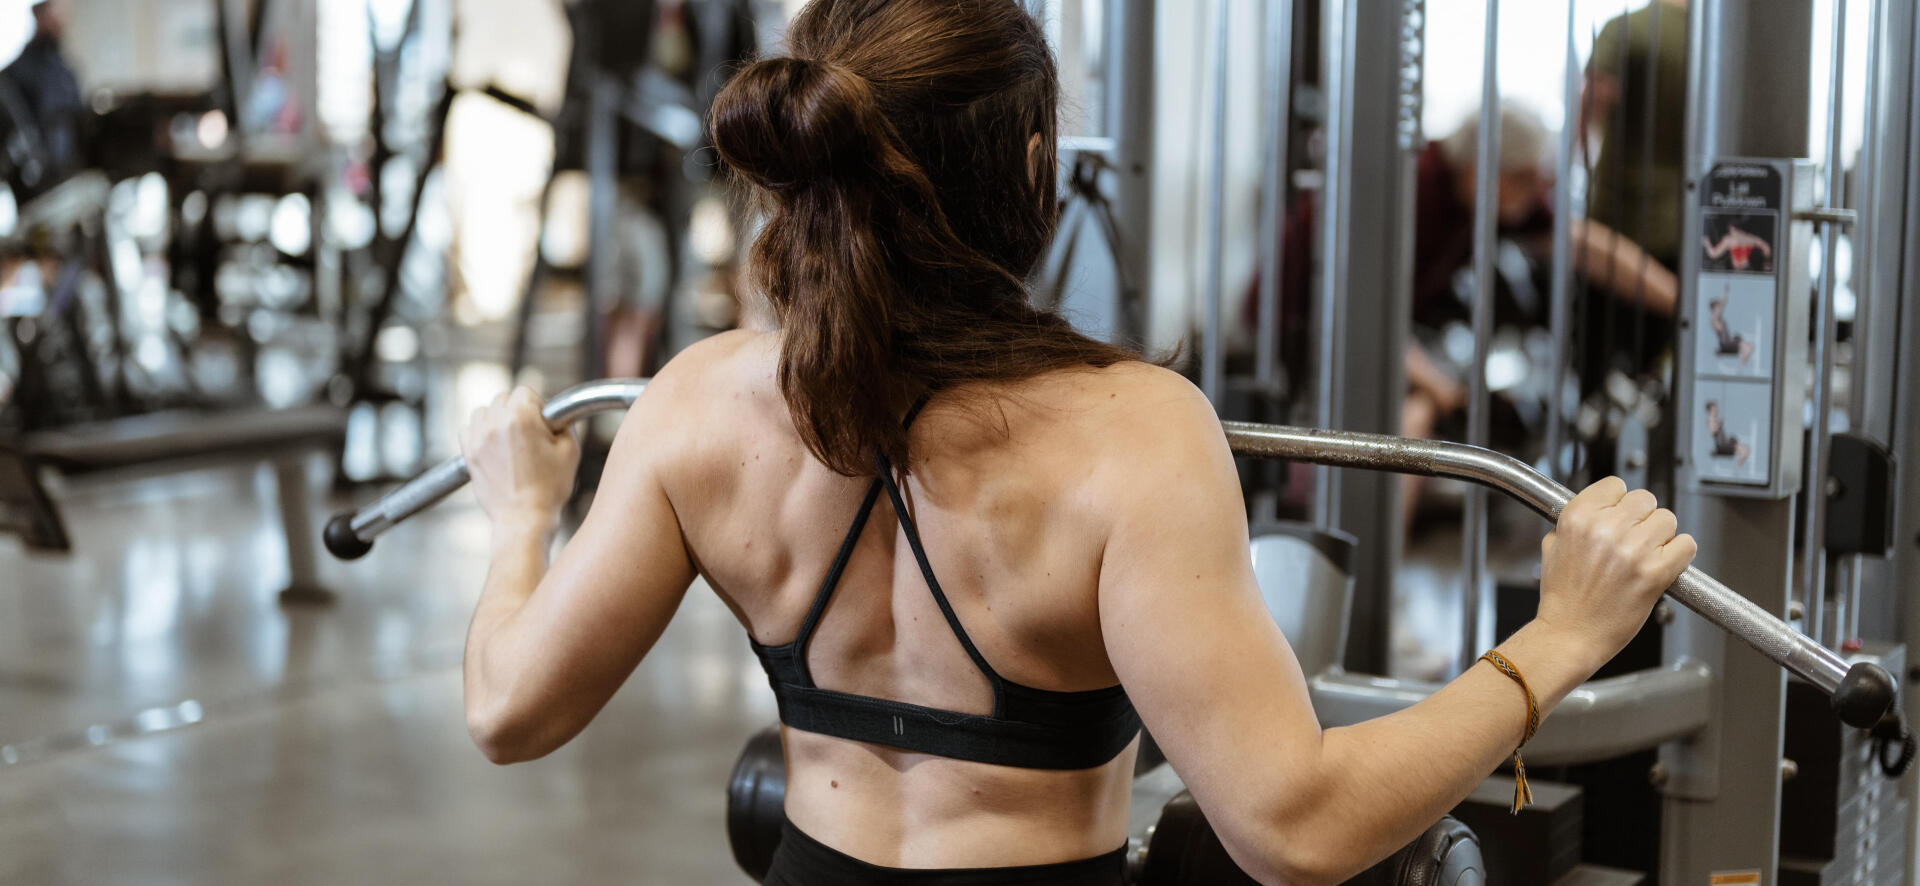 Programme musculation Perte de poids : quels exercices et alimentation ?